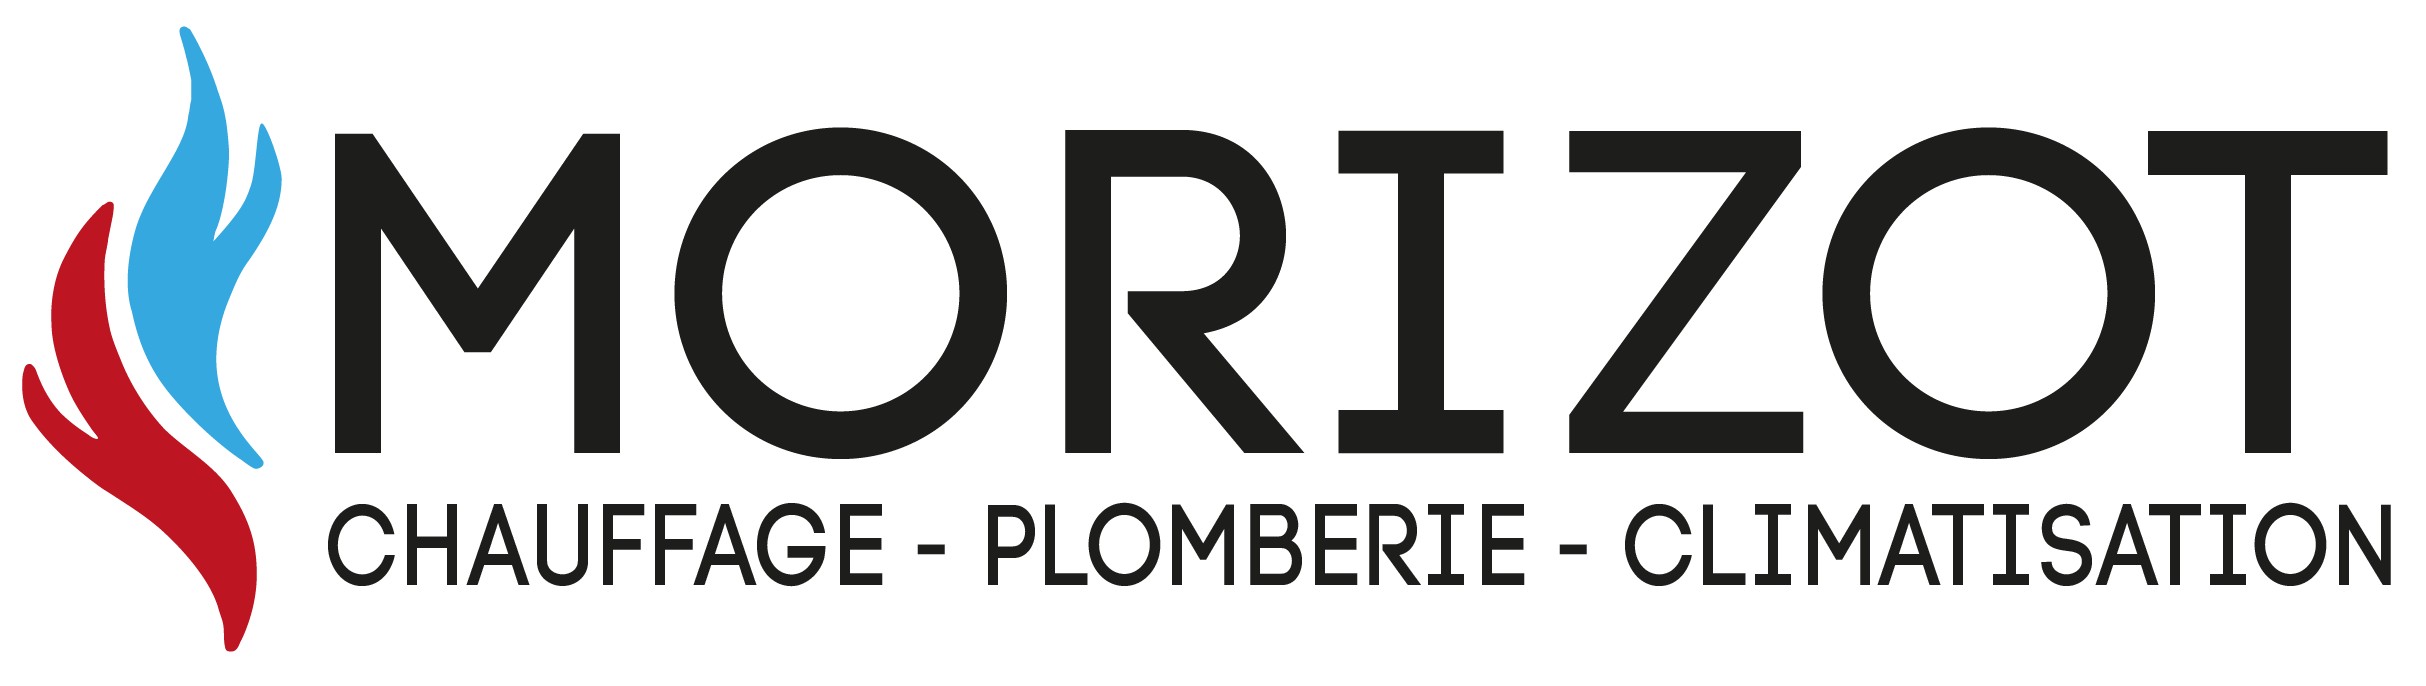 Sarl Morizot, Plombier à Carpentras. Installation, dépannage, plomberie, Carpentras et Vaucluse